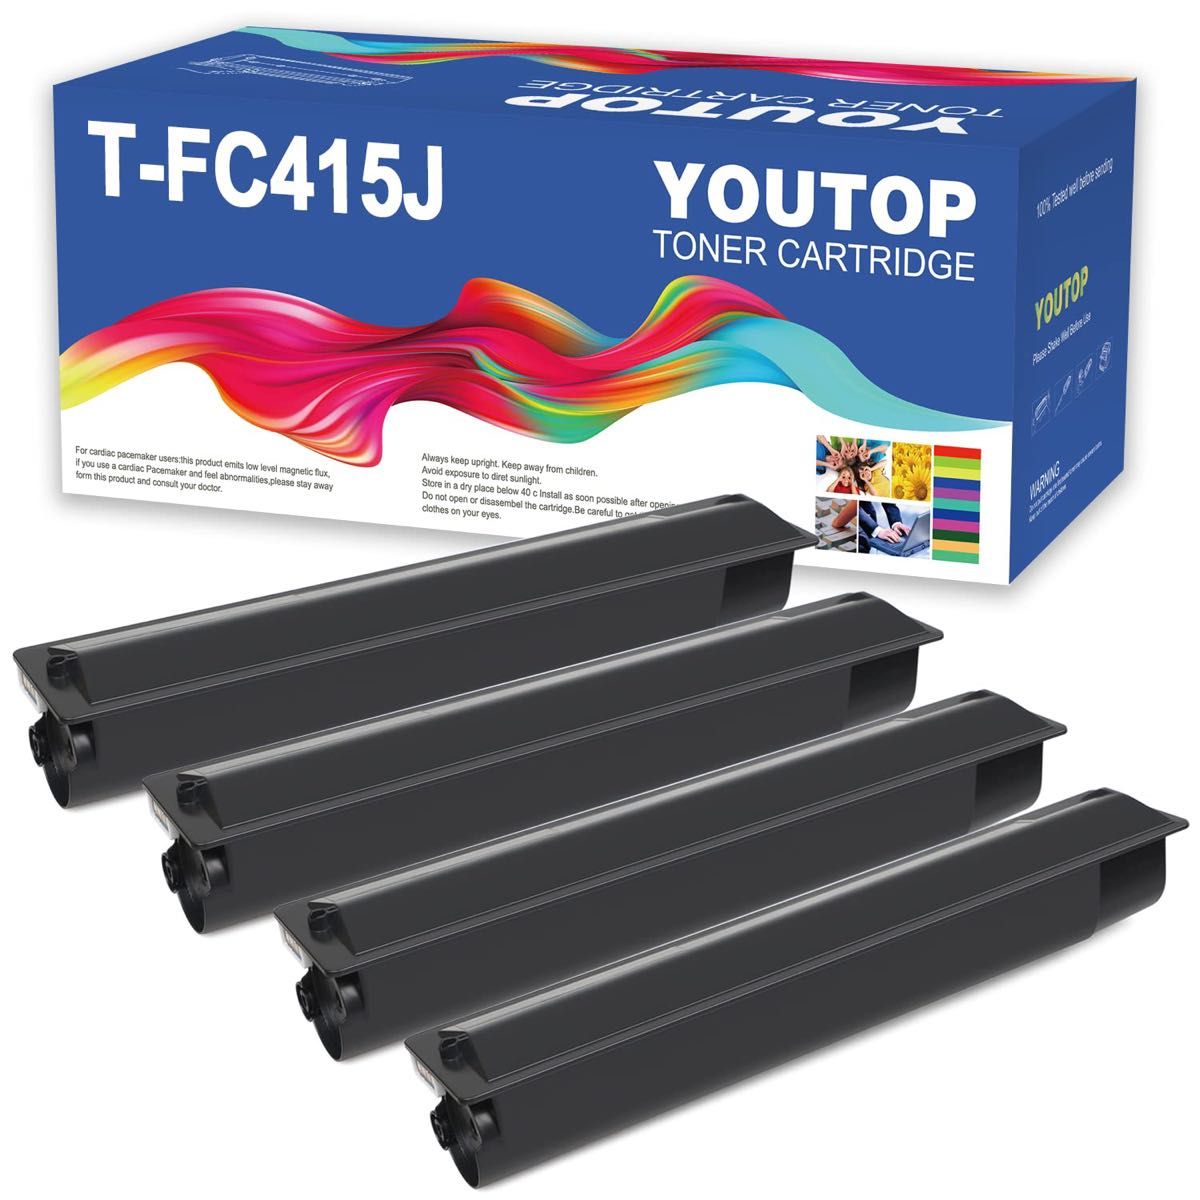 YOUTOP T-FC415Jトナーカートリッジ 4色本互換性トナーFC415J応機東芝 e-studio 4色バック 互換トナー